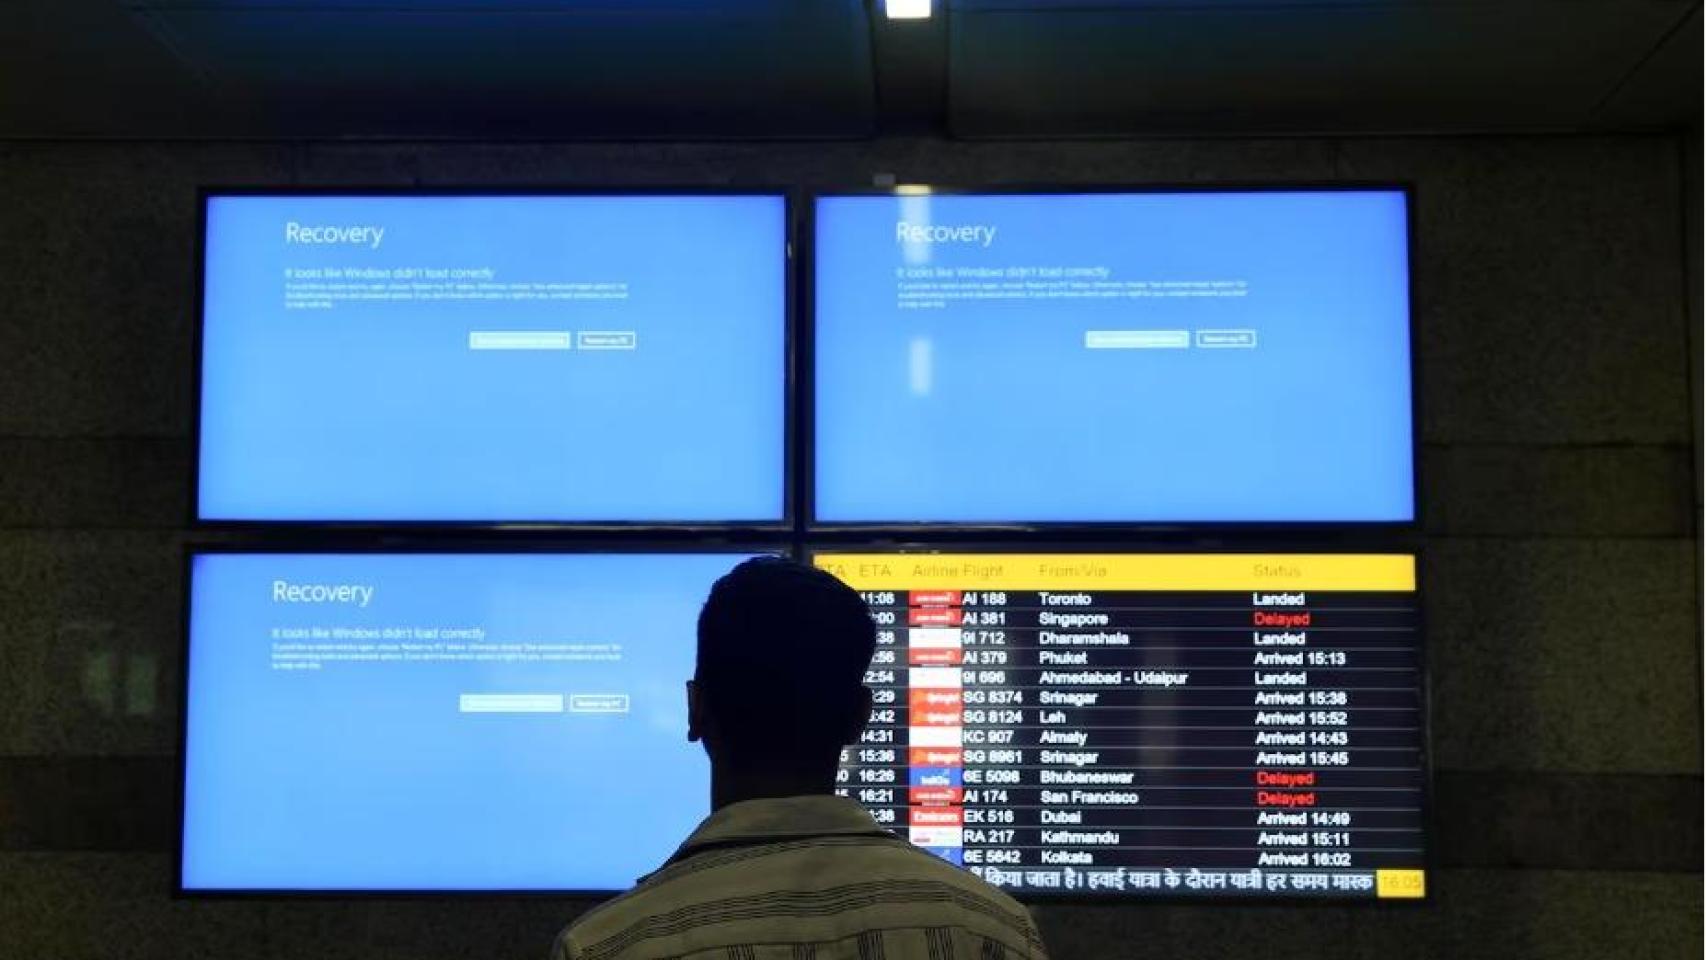 Un pasajero observa pantallas de información en el aeropuerto de Delhi, India.